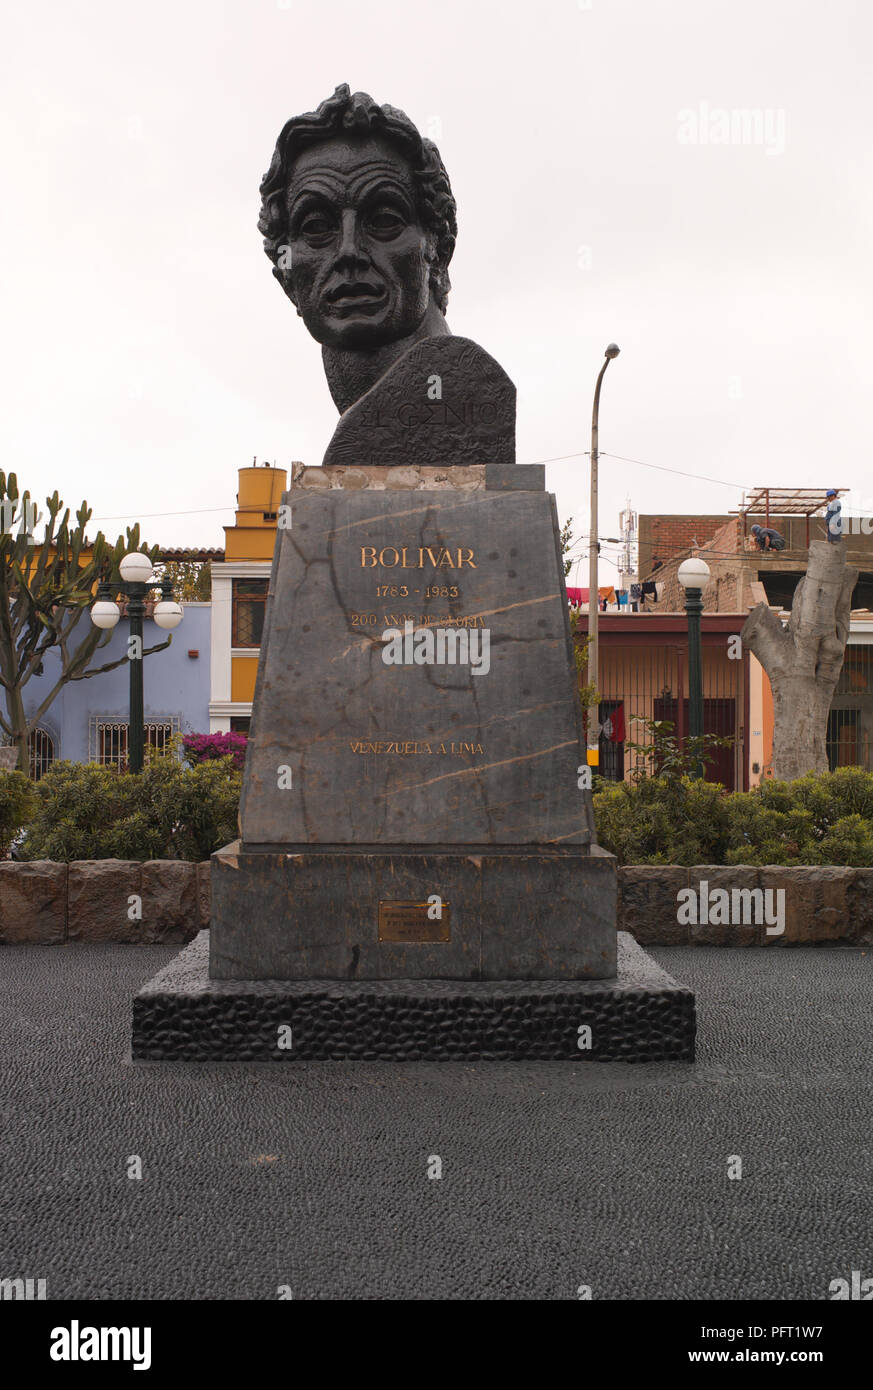 LIMA, PERU - 4. AUGUST 2010: Eine Statue von Simon Bolivar auf der Plaza Bolivar, Pueblo Libre, Lima, Peru. Stockfoto